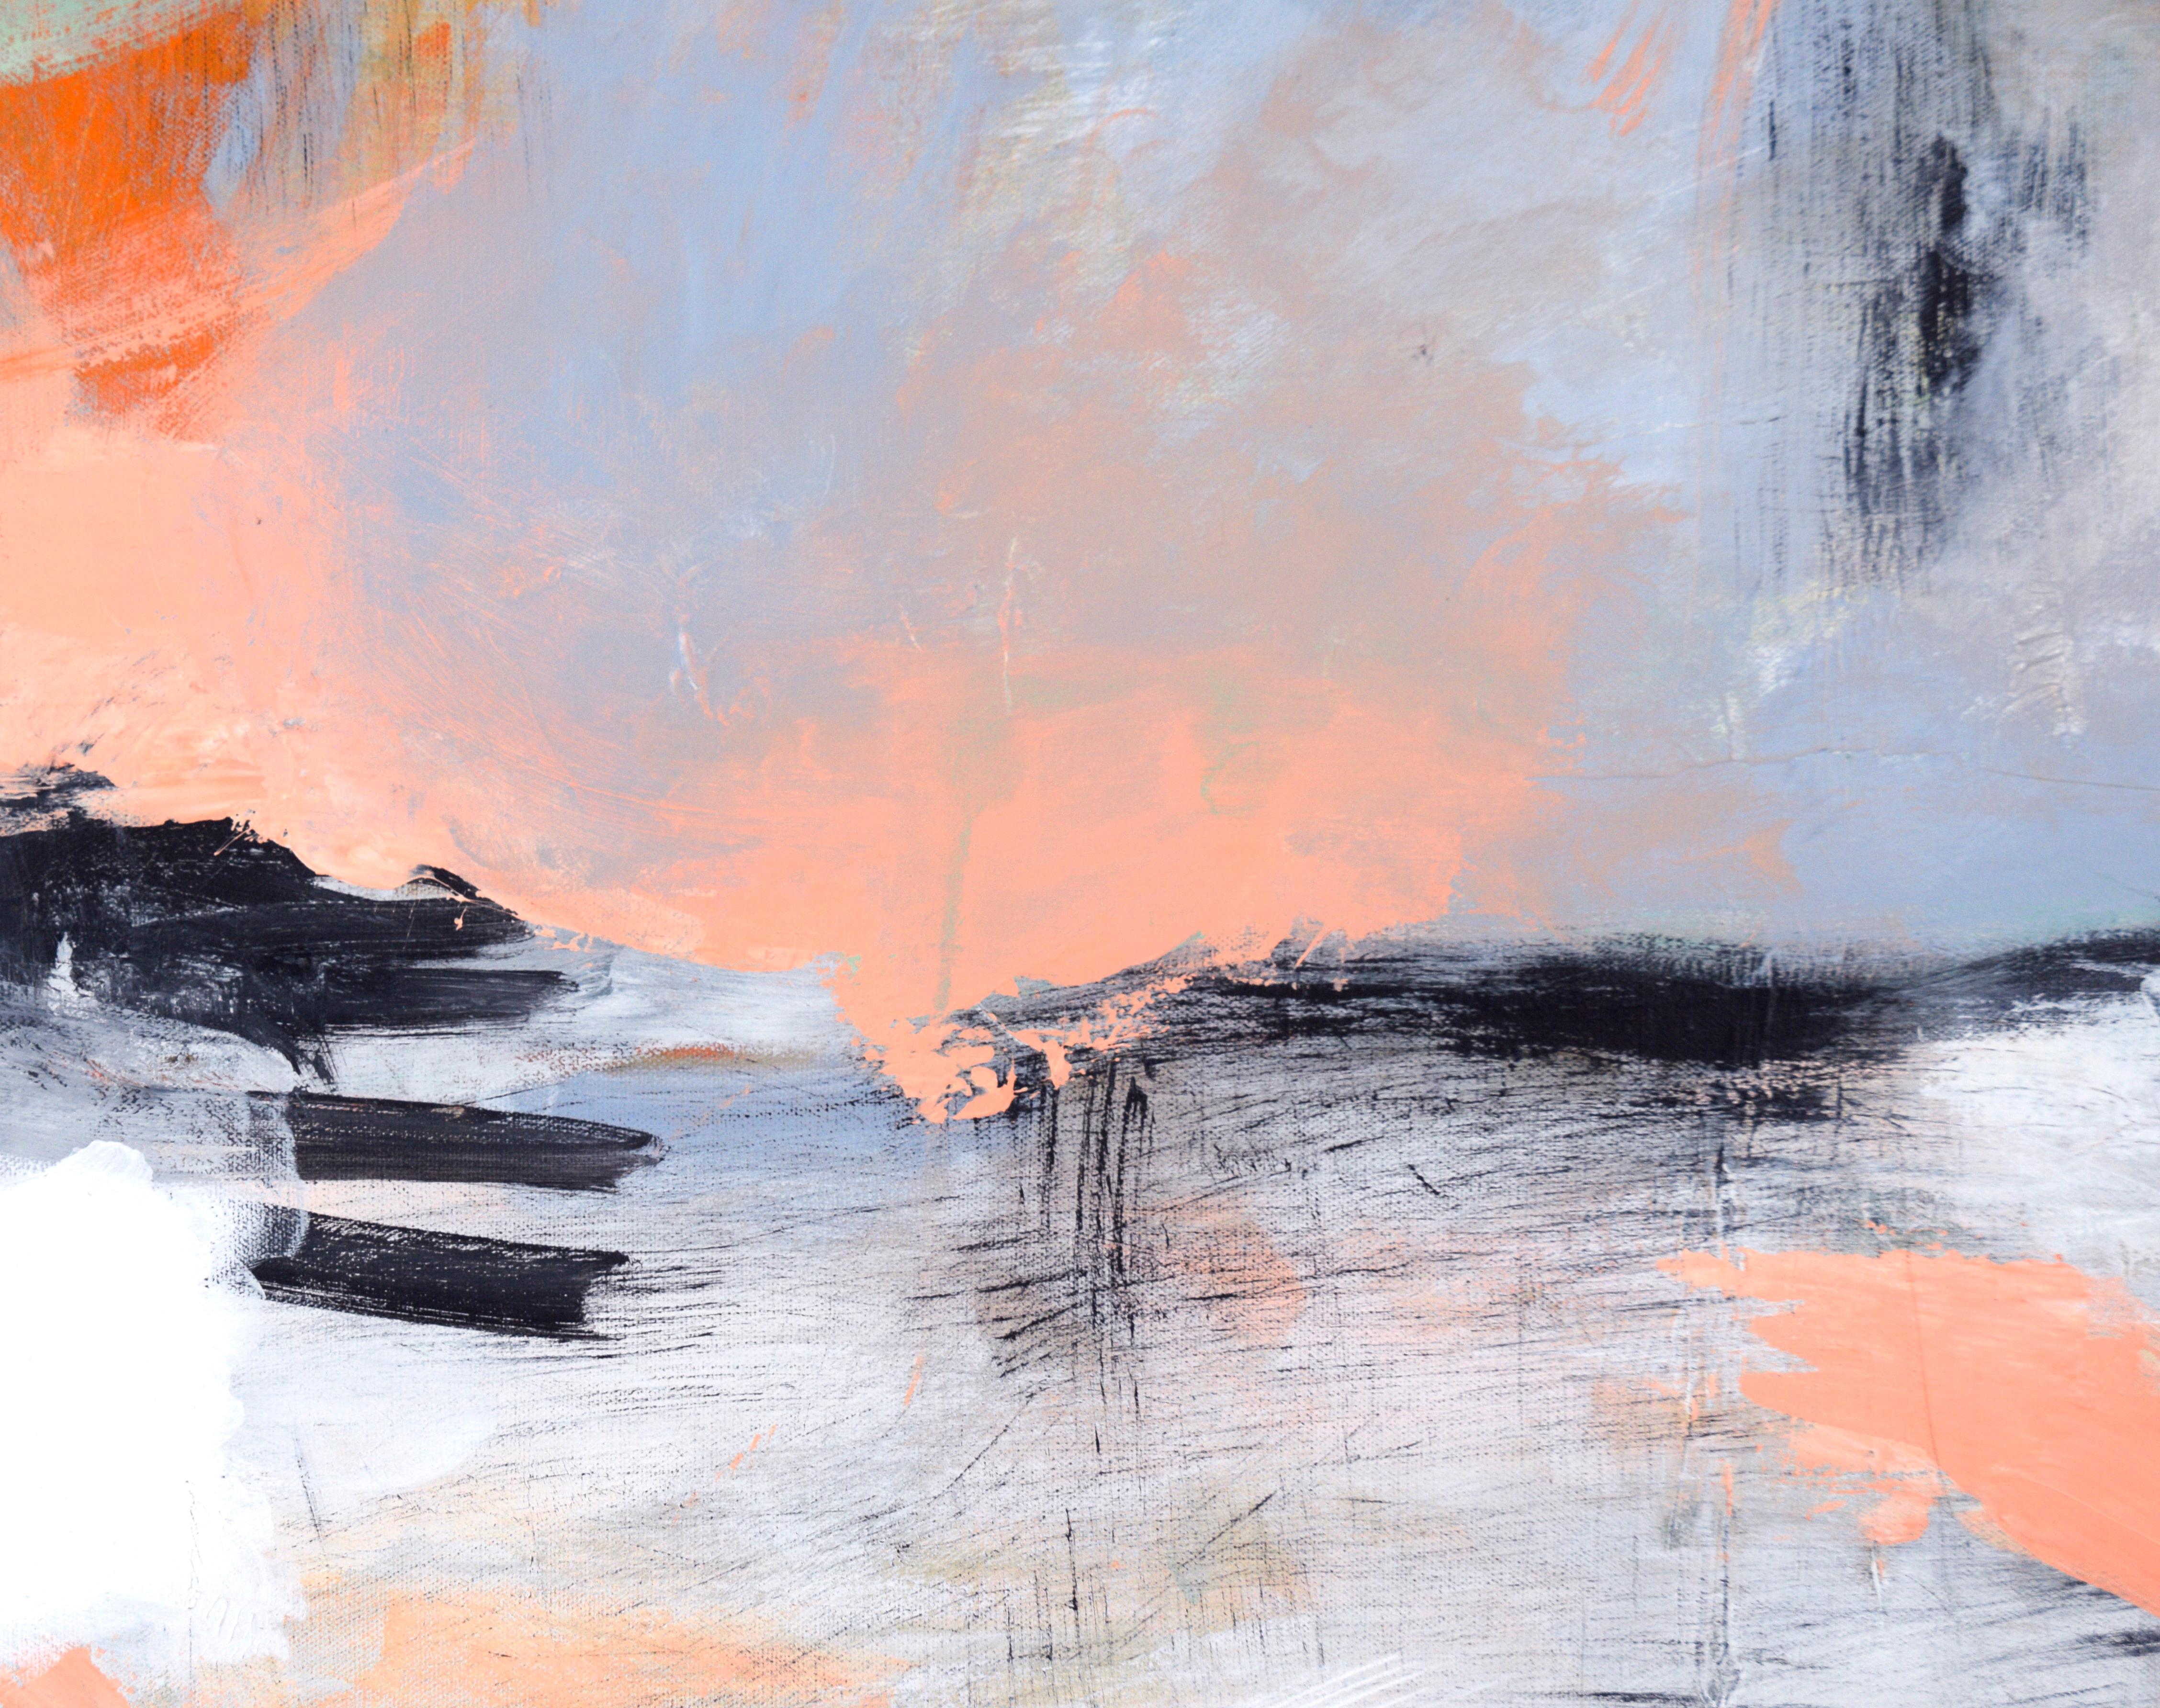 Abstrakte vertikale Landschaft in Acryl auf Leinwand

Verspielte abstrahierte Landschaft eines unbekannten Künstlers (20. Jahrhundert). Dieses Werk ist in zwei Abschnitte unterteilt, die den Boden und den Himmel andeuten. Der Himmel hat mehrere